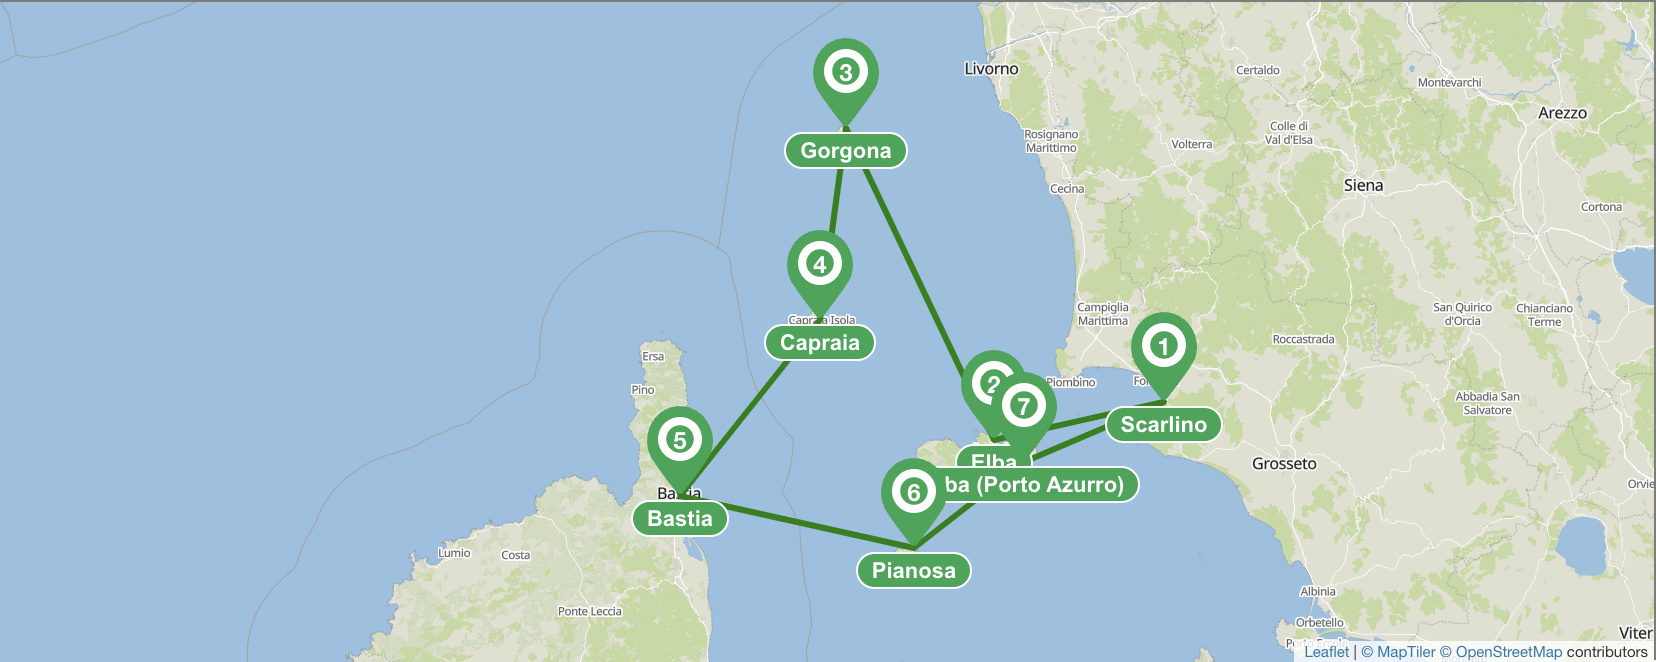 Scarlino & archipiélago toscano itinerario de 7 días